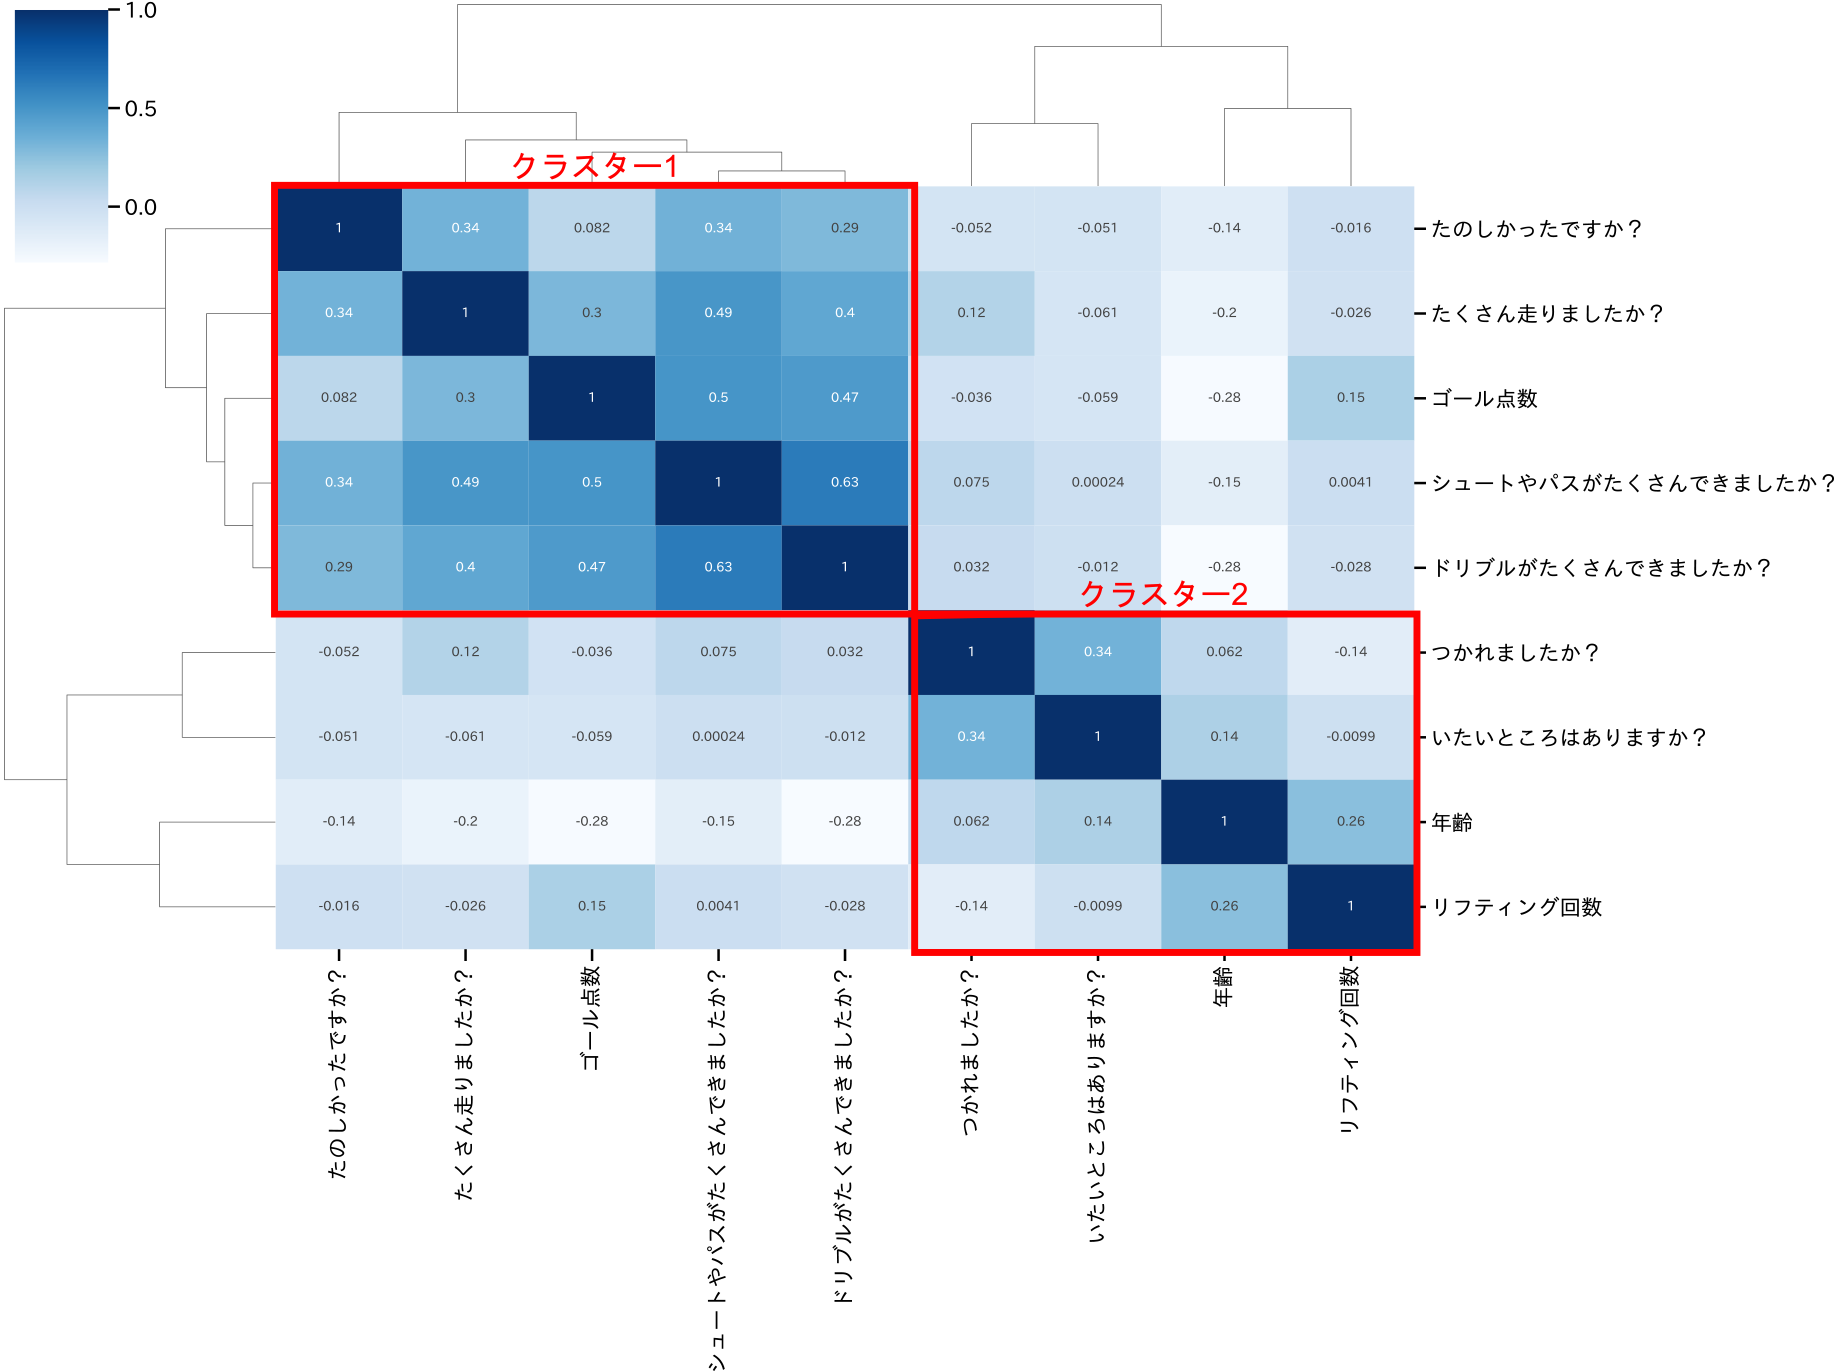 アンケート結果の相関関係の散布図行列　Cluster map for correlations regarding survey responses.